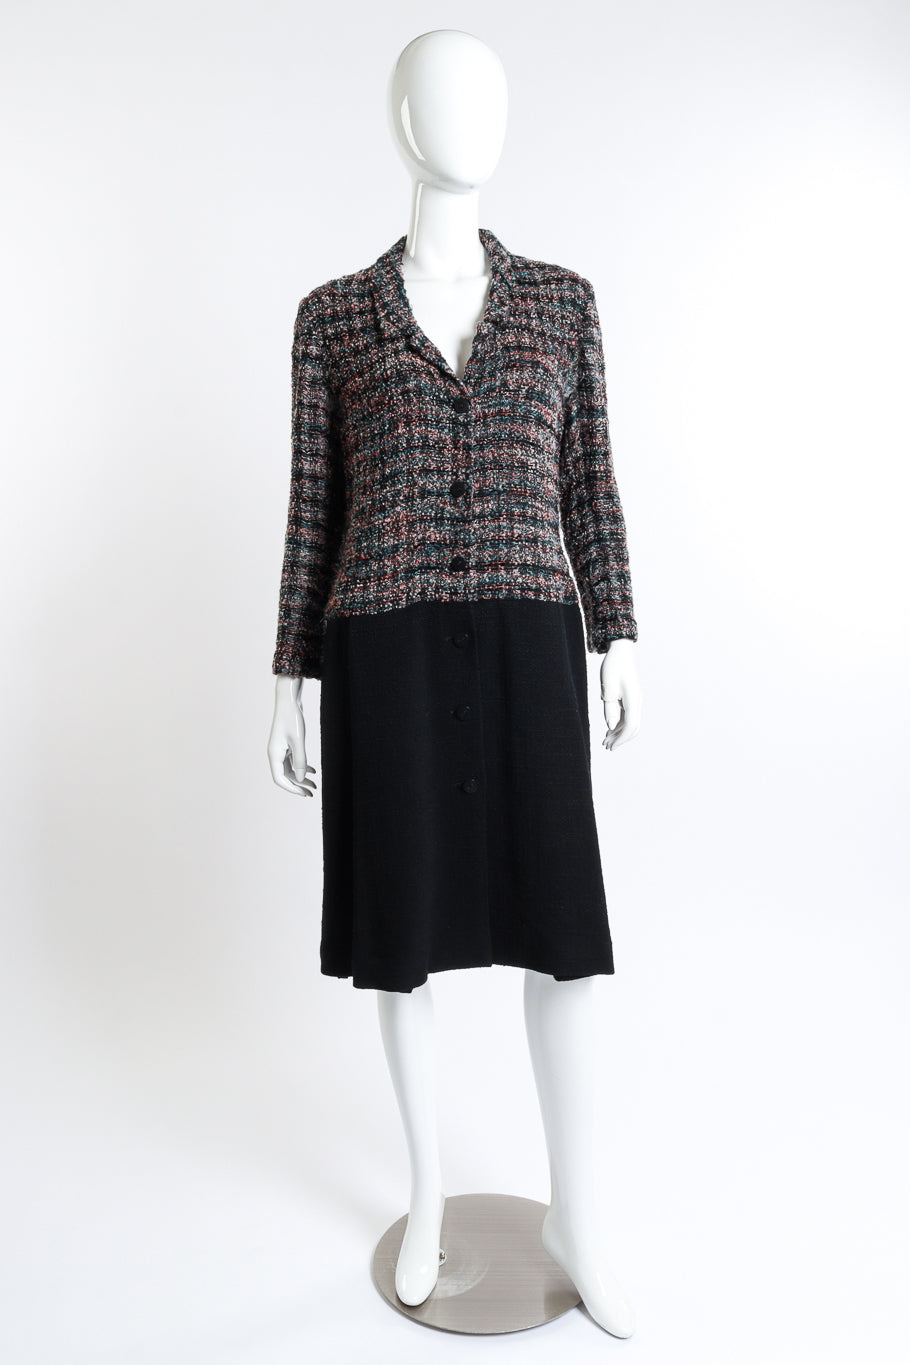 Vintage Chanel Bouclé Plaid Wool Coat front on mannequin @recess la